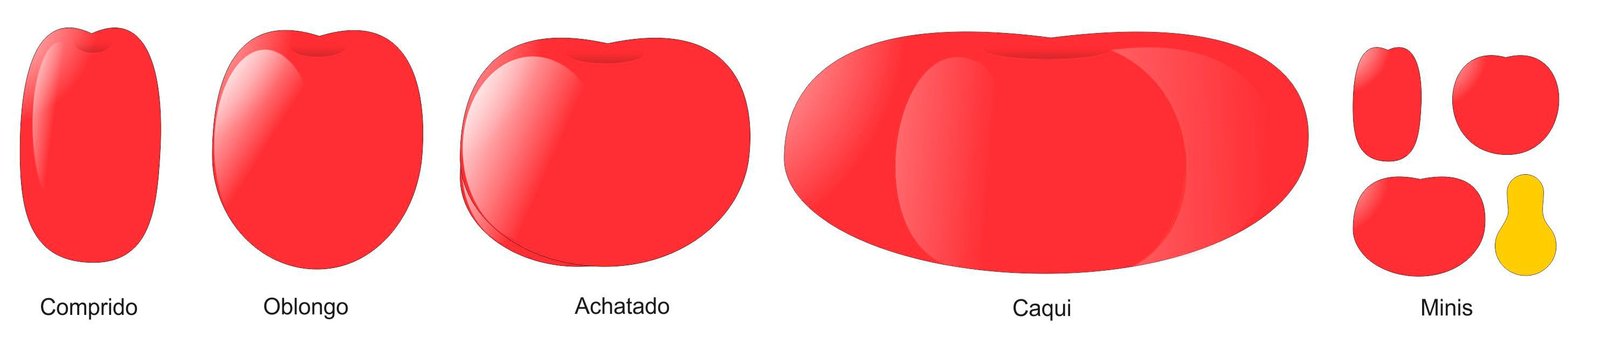 Dibujo de las formas del fruto del tomate